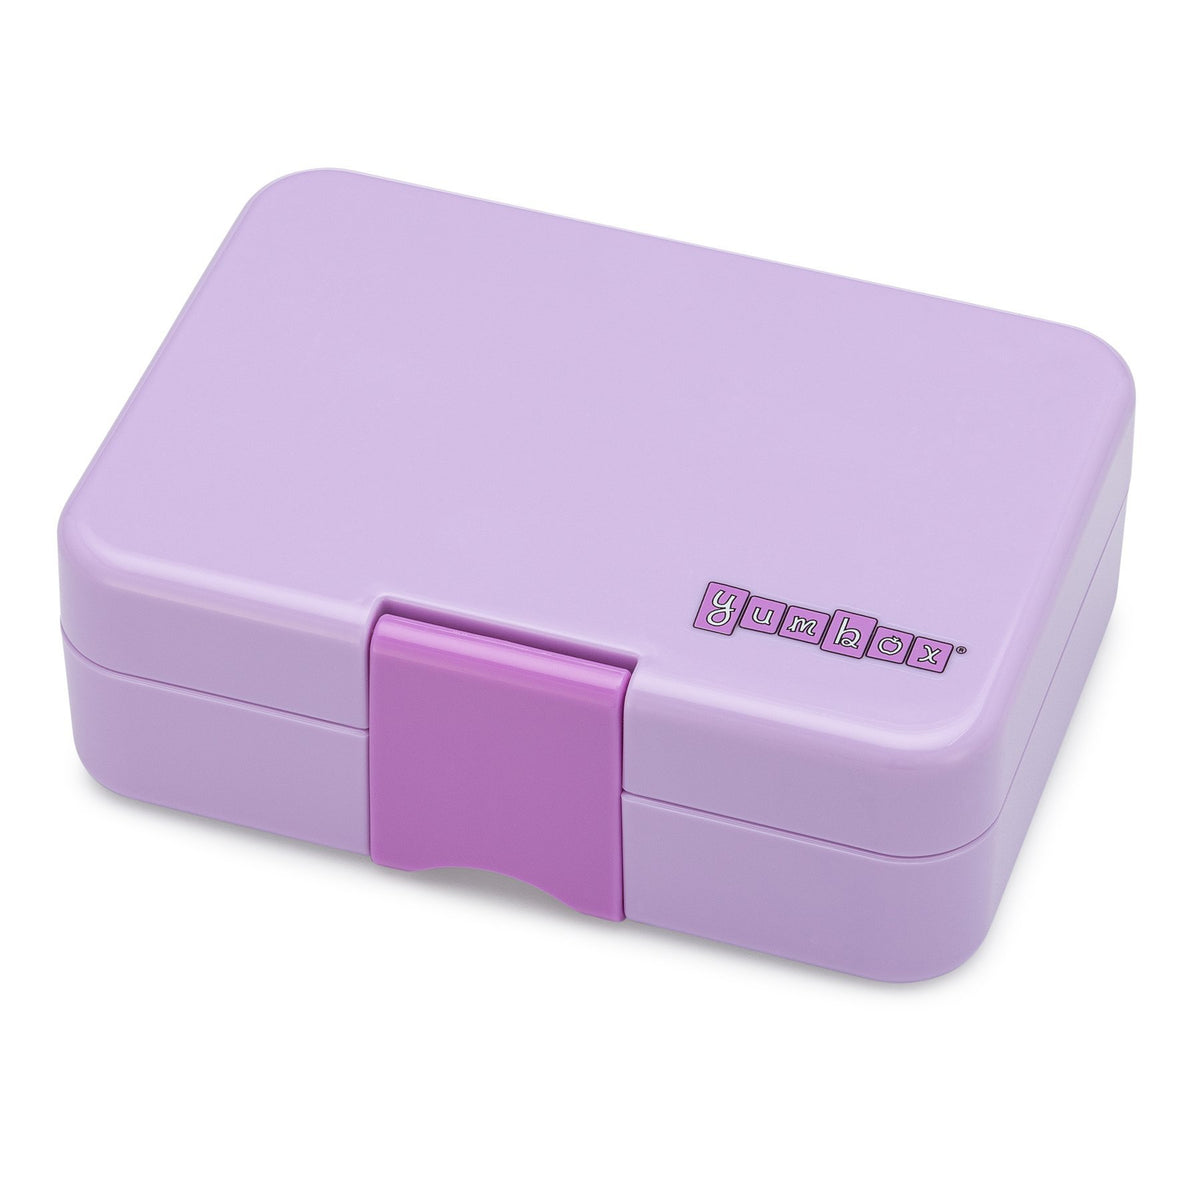 yumbox-mini-snack-lila-purple-3-compartment-lunch-box- (3)